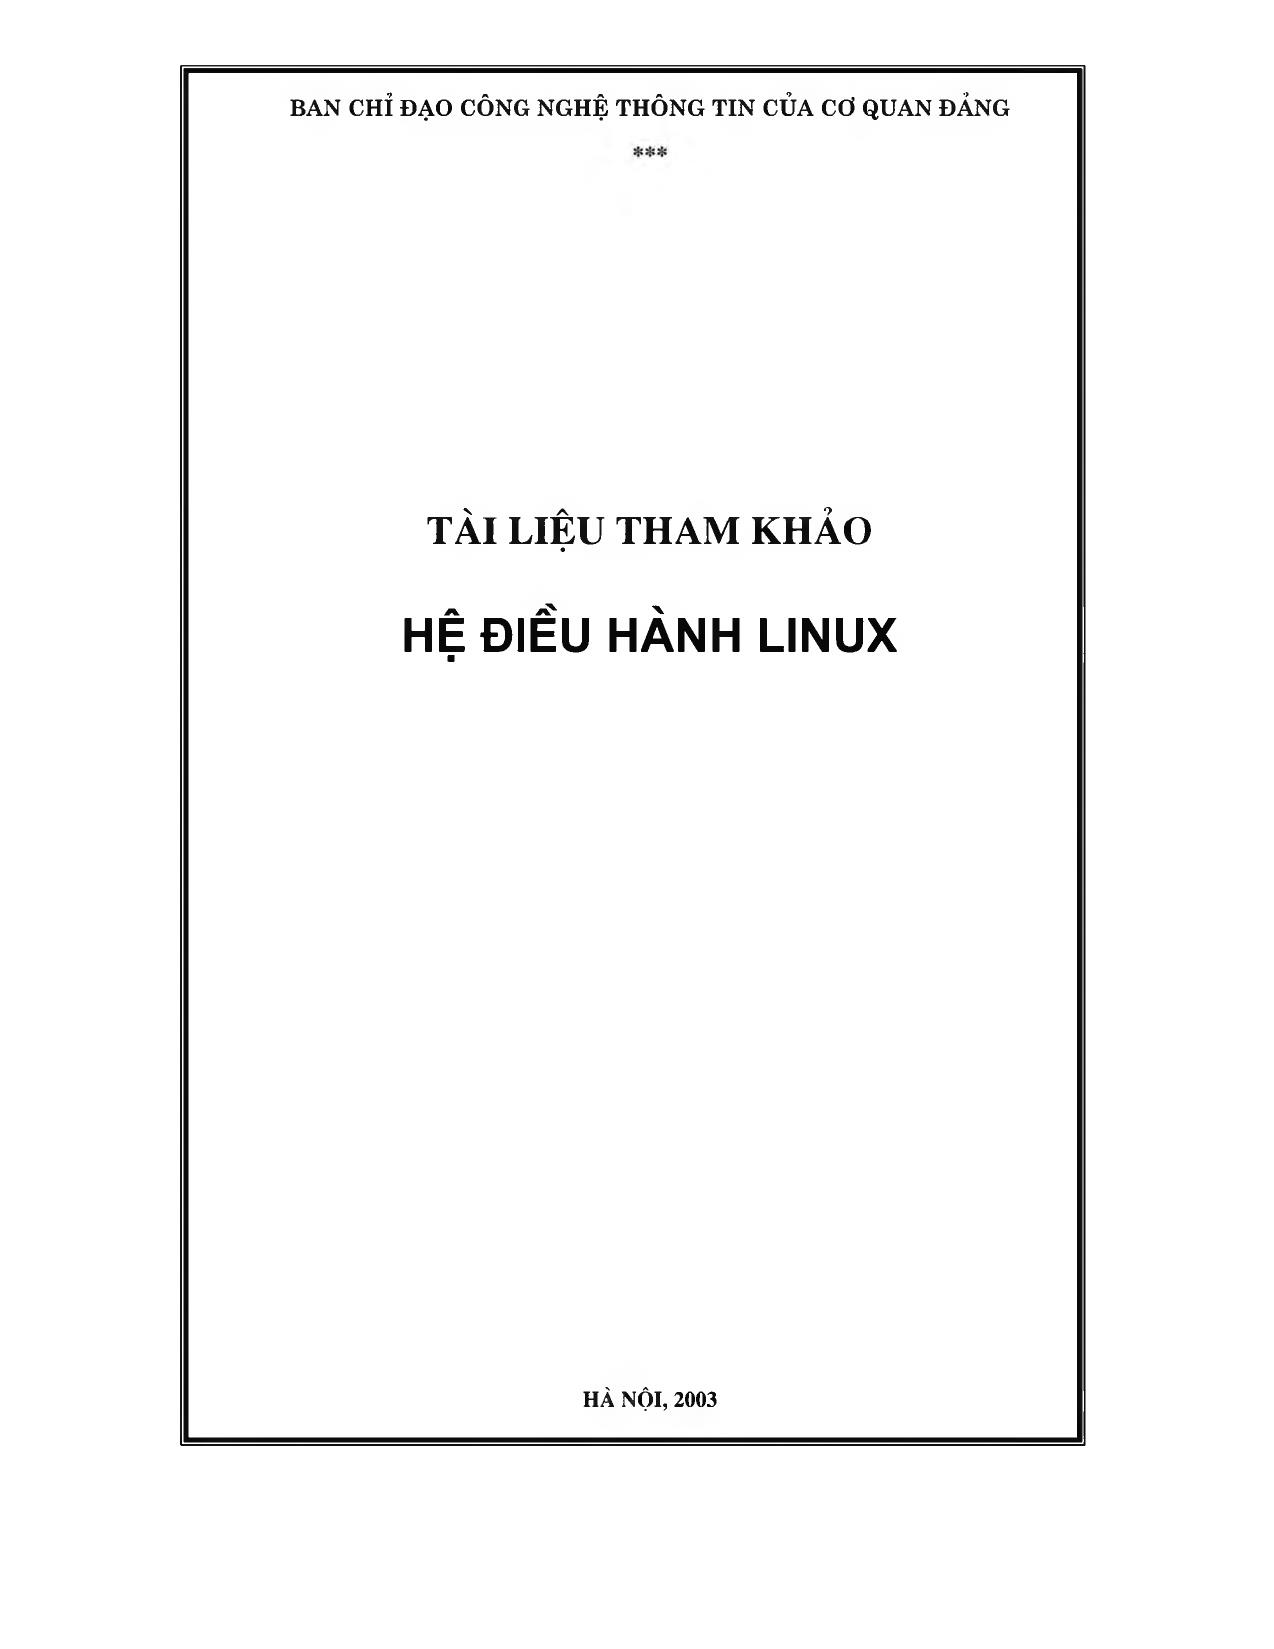 Tài liệu tham khảo Hệ điều hành Linux trang 1